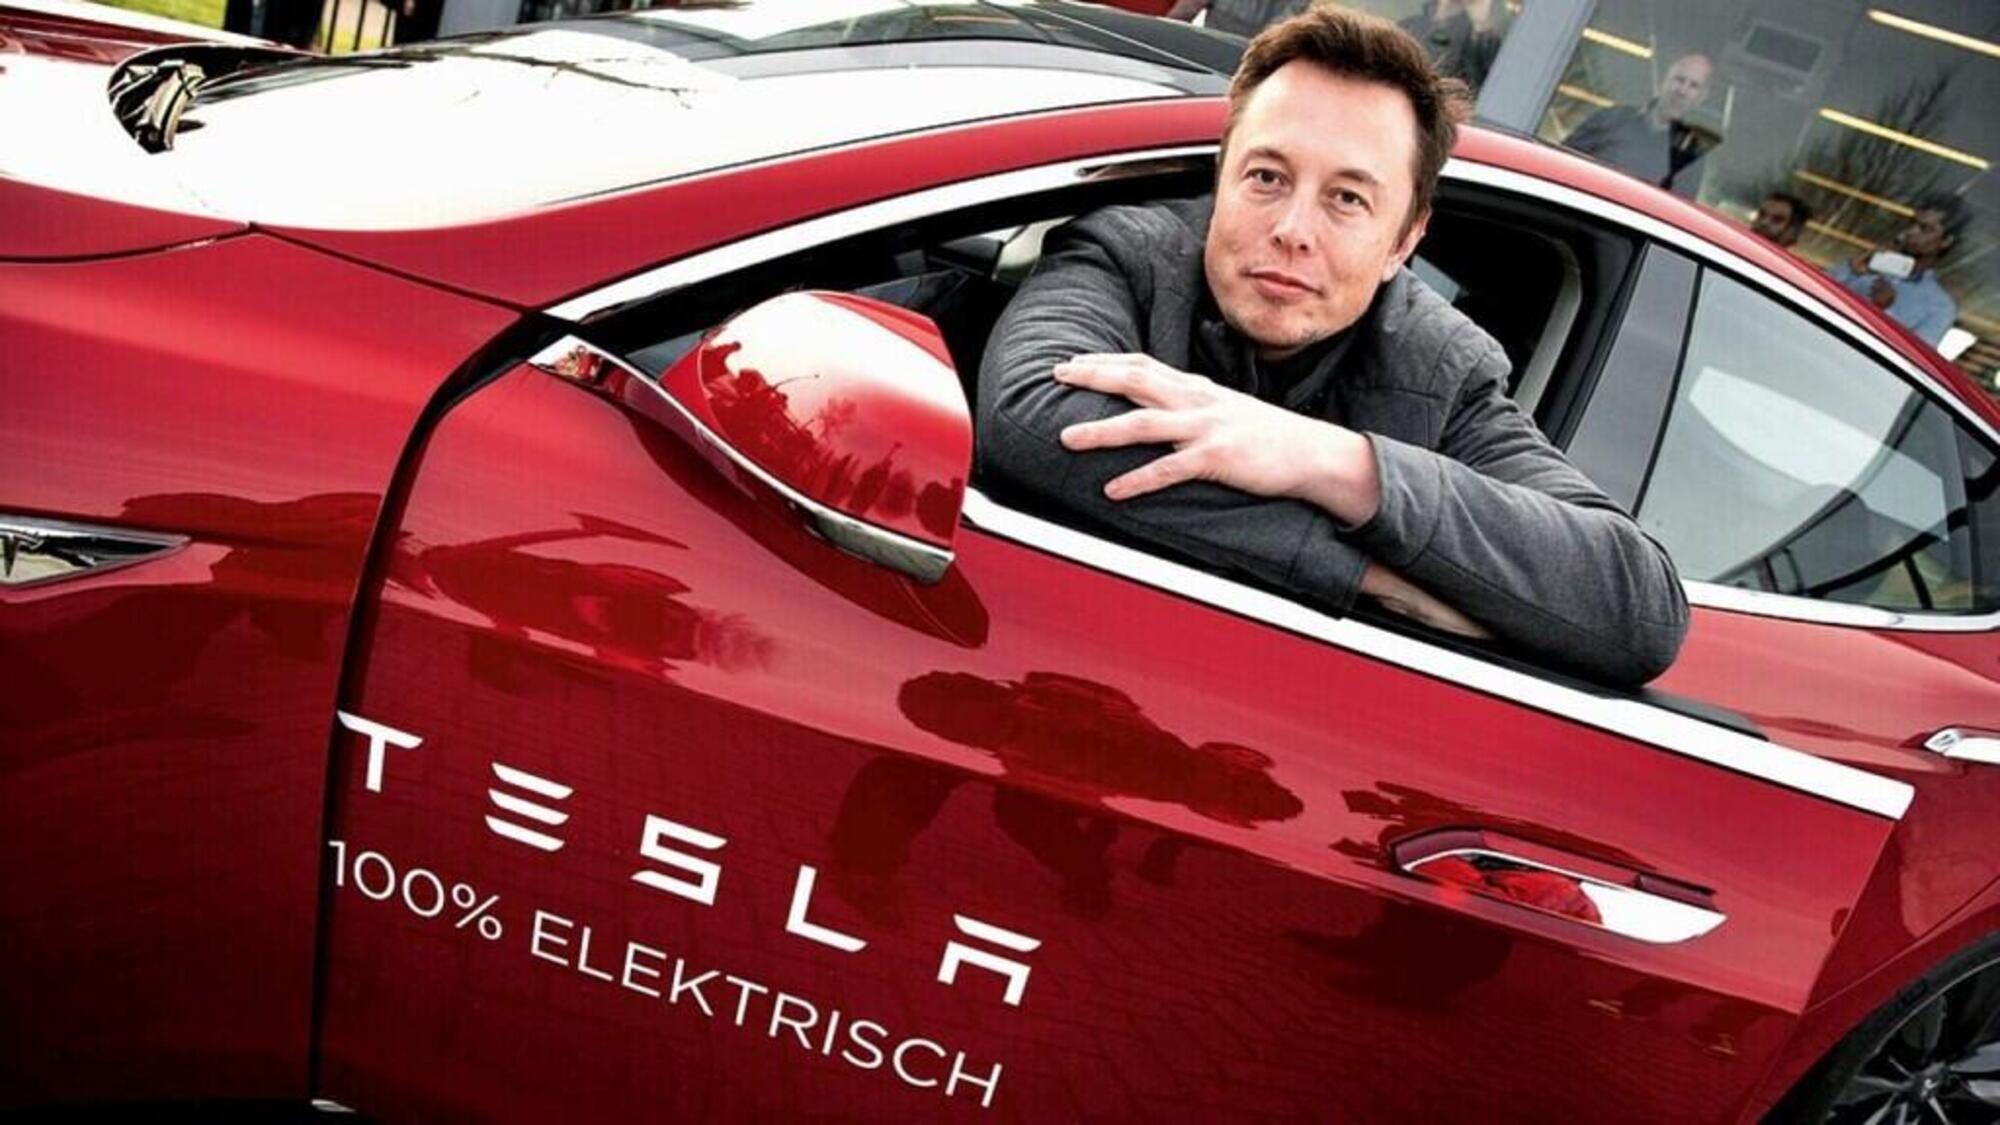 20220629 153838433 7410Elon Musk a bordo di un auto Tesla